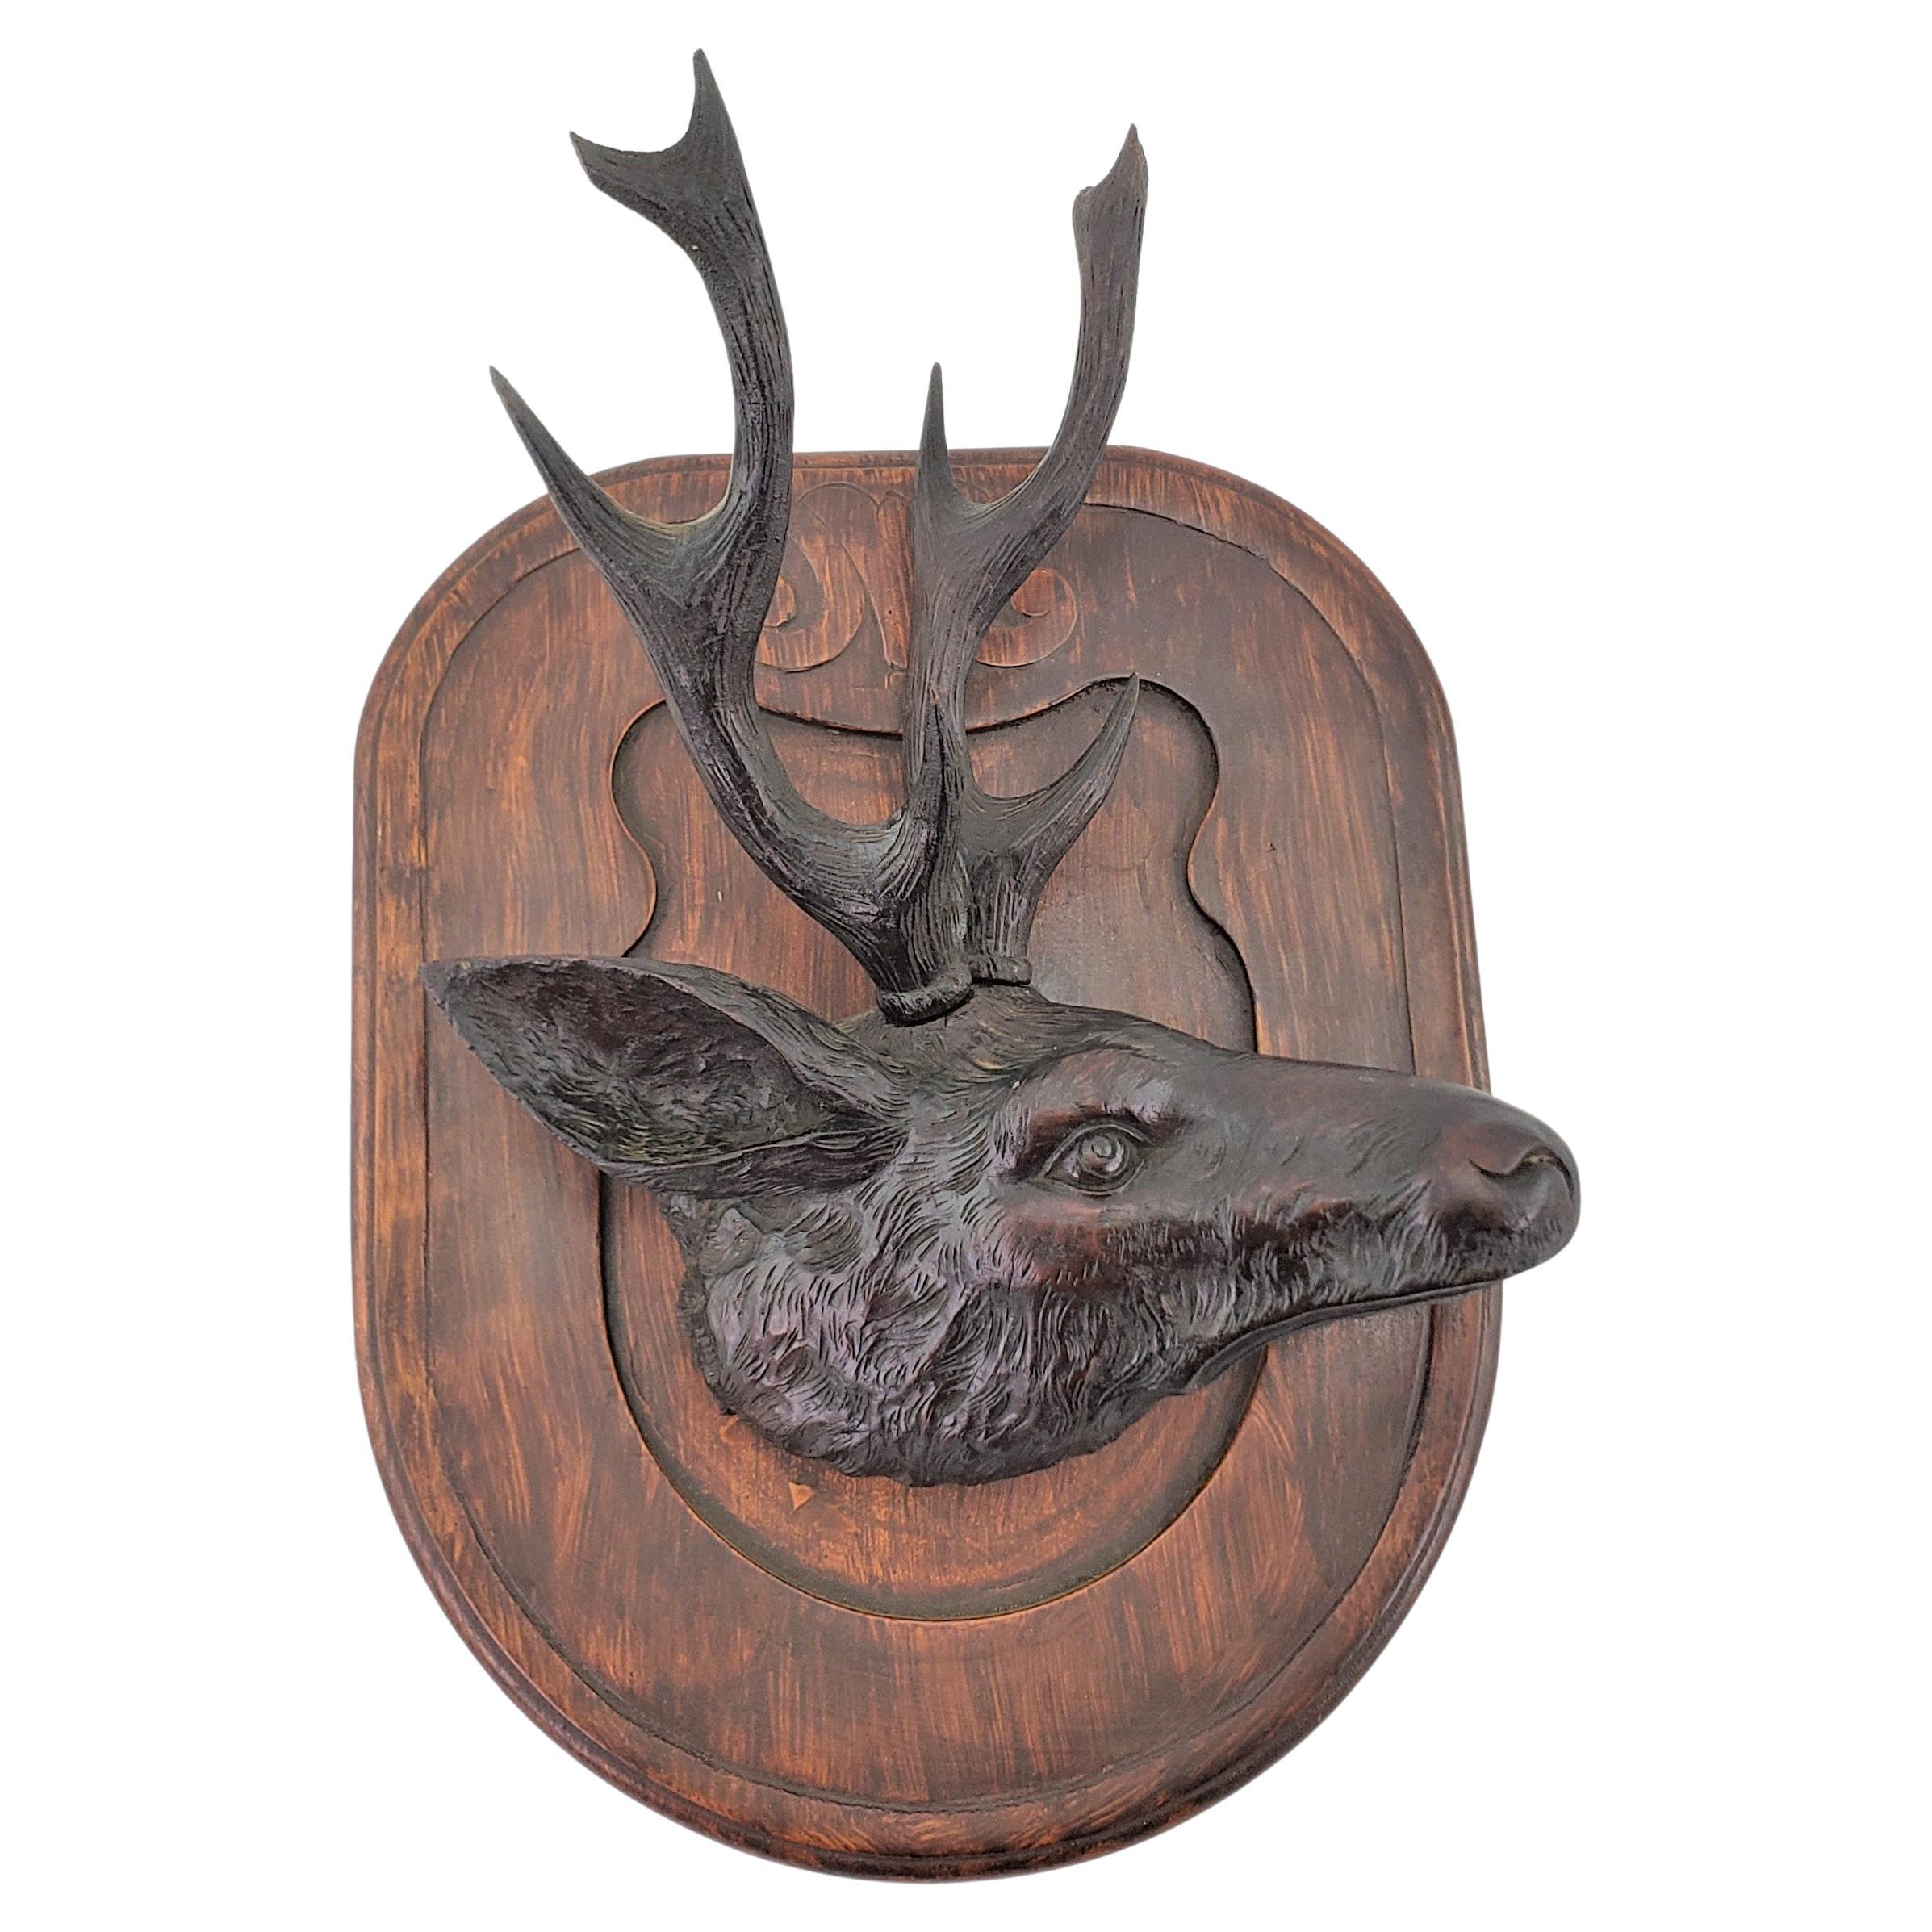 Antique Black Forest Hand-Carved Deer or Elk Head Wall Plaque or Sculpture For Sale